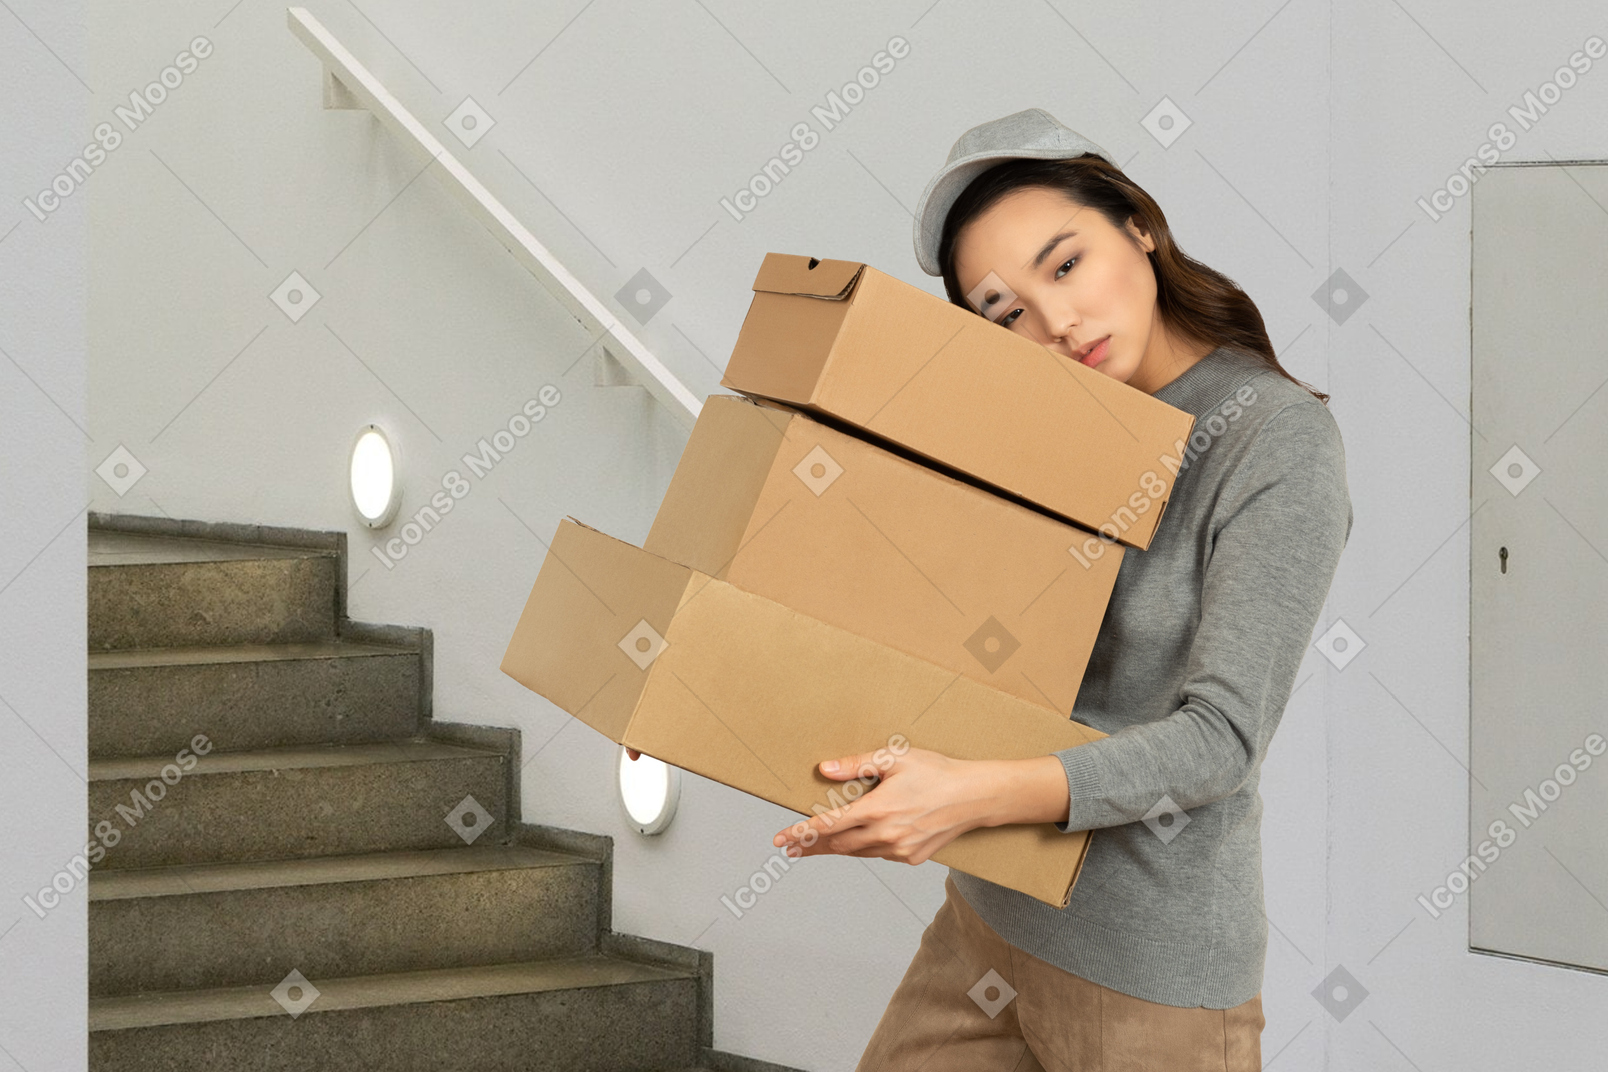 Jovem cansada carregando caixas